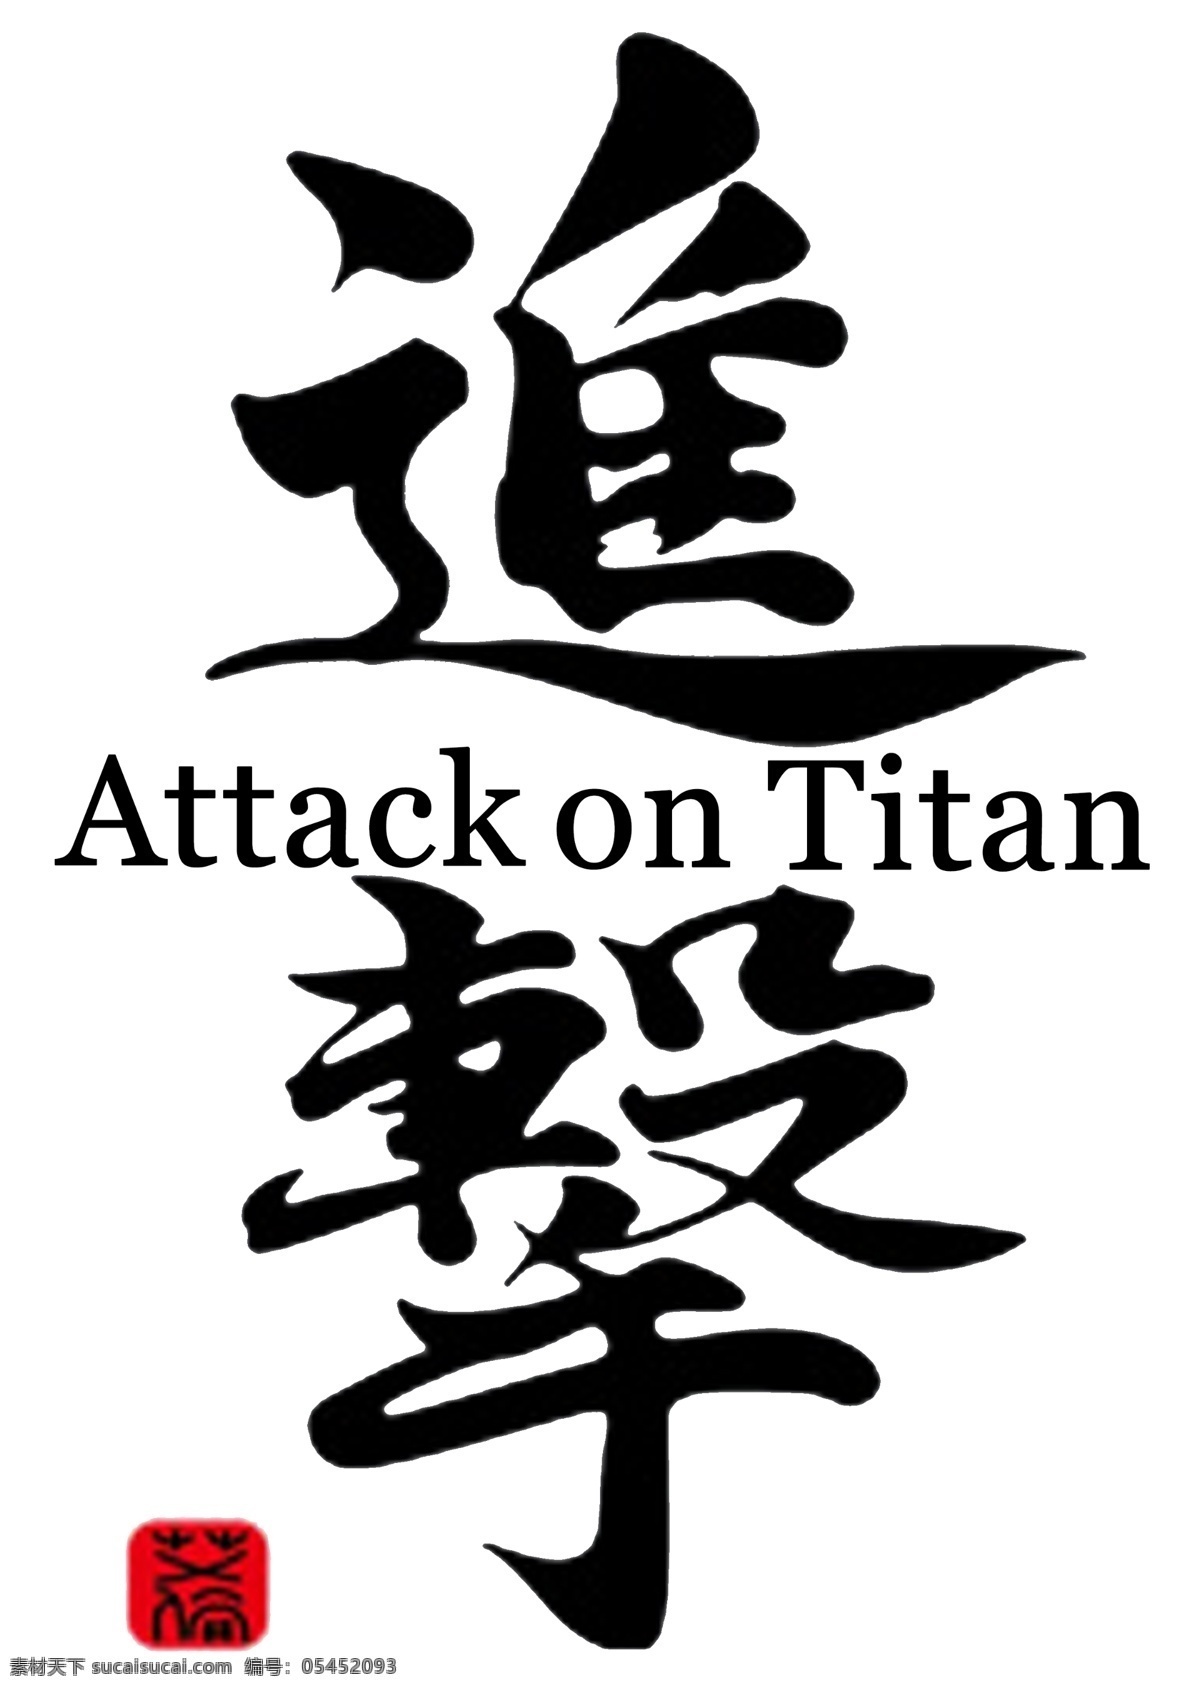 进击的巨人 进击 巨人 attack on titan 动漫动画 动漫人物